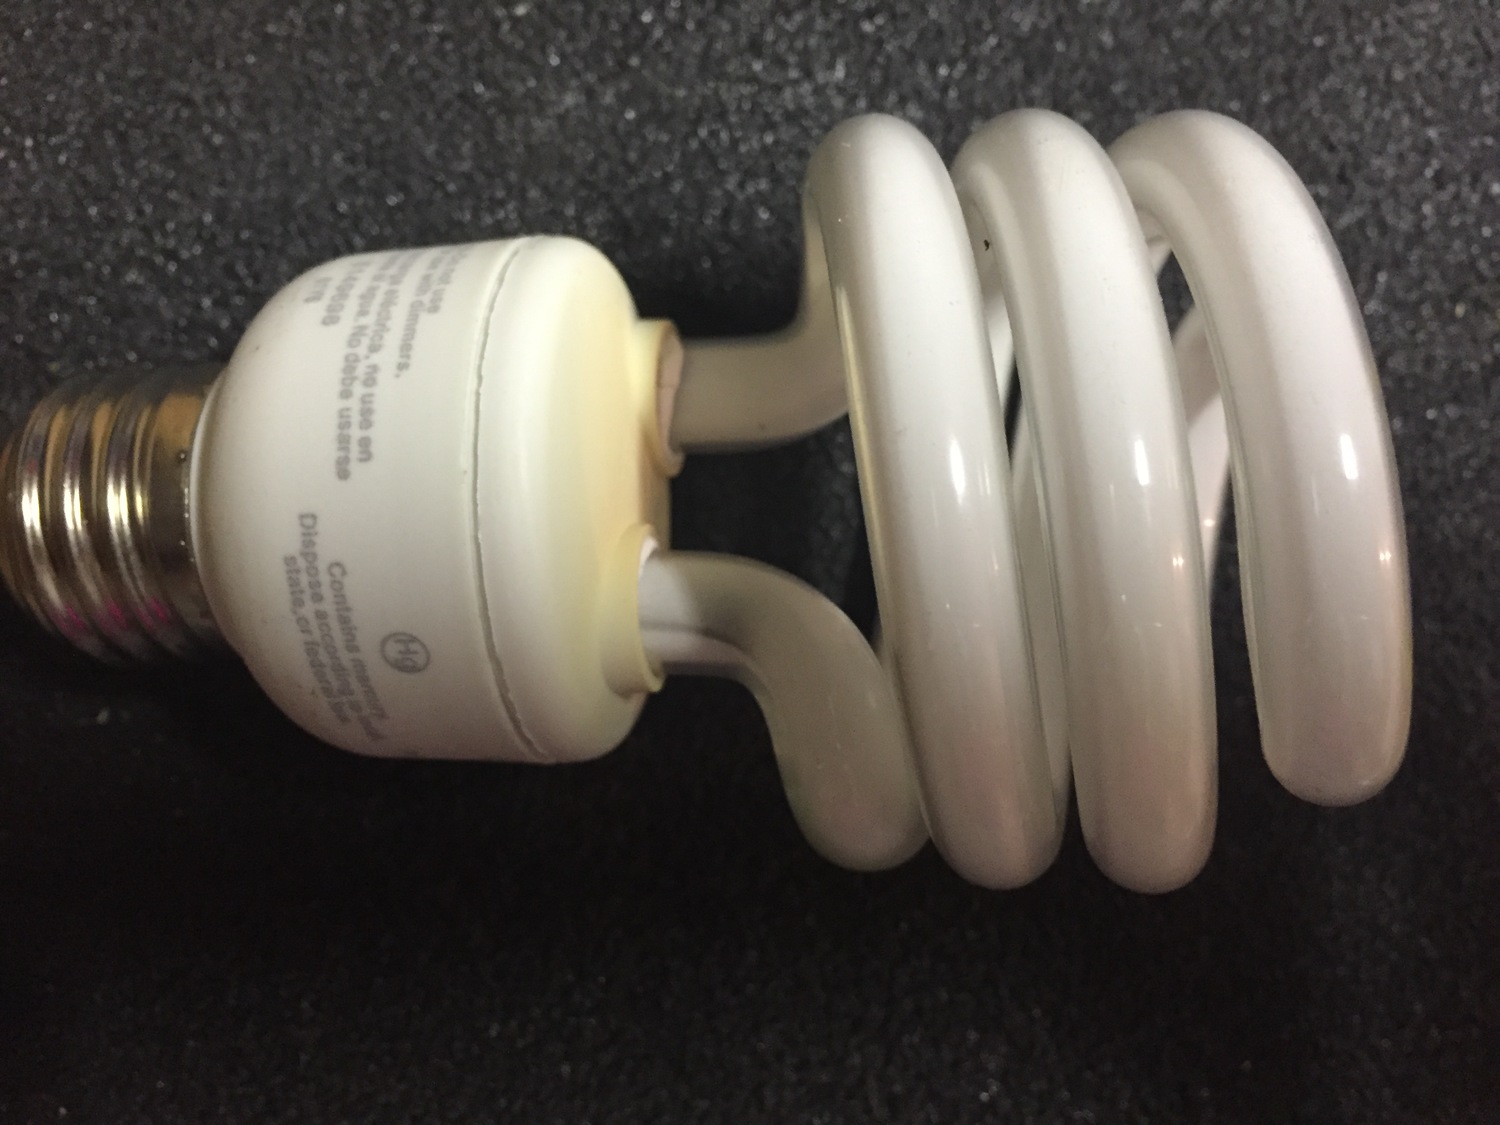 Broken Cfl Compact Fluorescent Bulbs